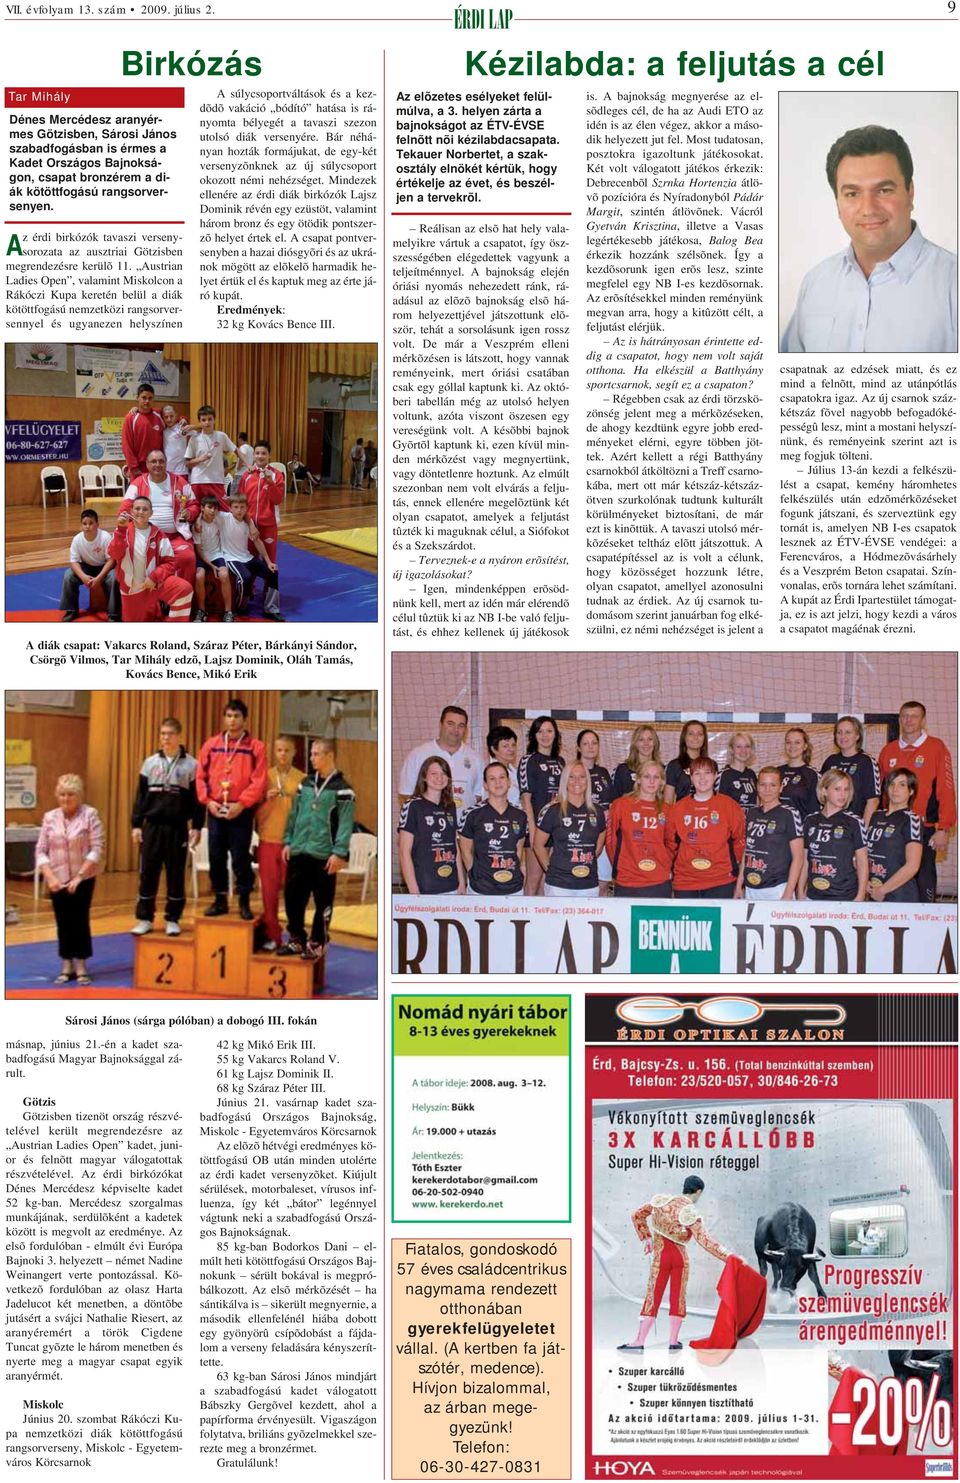 Austrian Ladies Open, valamint Miskolcon a Rákóczi Kupa keretén belül a diák kötöttfogású nemzetközi rangsorversennyel és ugyanezen helyszínen A súlycsoportváltások és a kezdõdõ vakáció bódító hatása